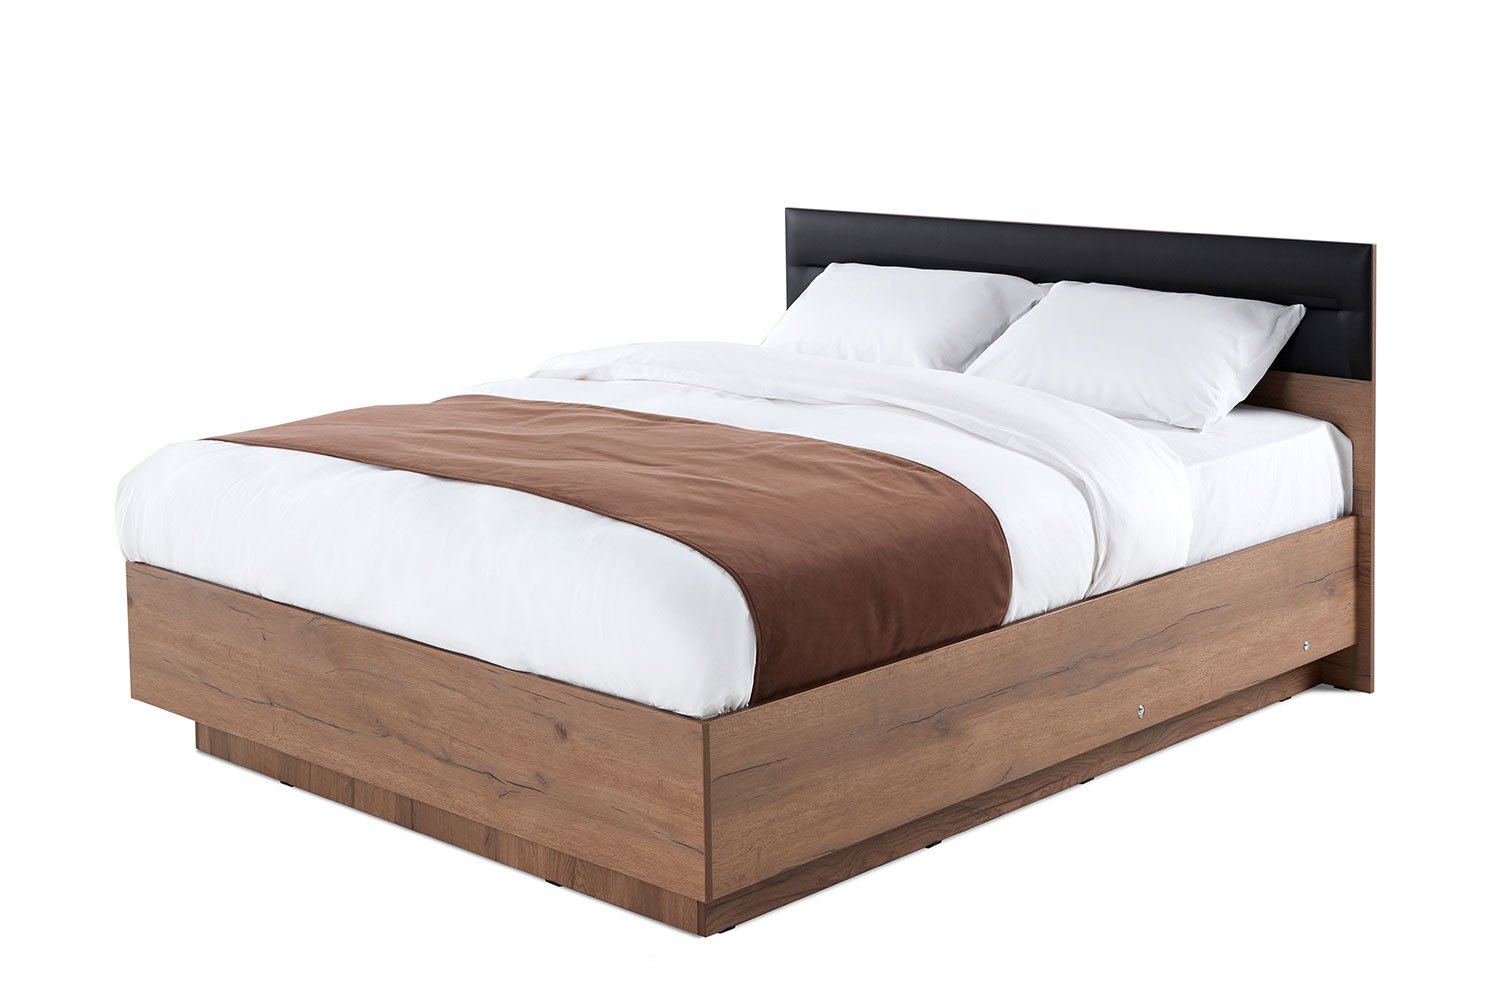 Купить Кровать с подъёмным механизмом Neo 160х200 см с доставкой повыгодной цене в интернет магазине Hoff.ru. Характеристики, фото и отзывы.